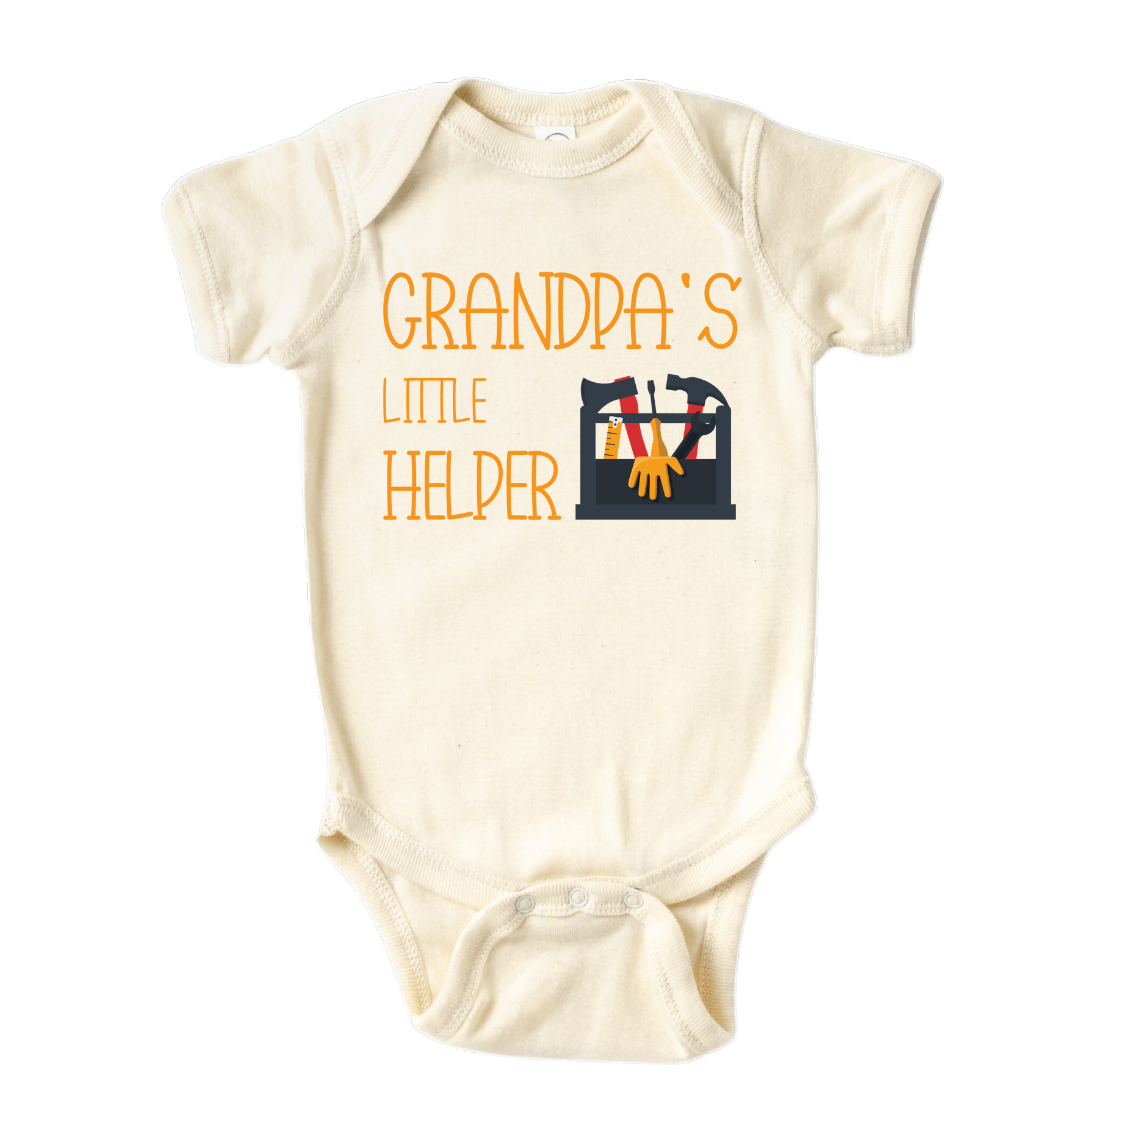 Kids Tshirt Baby Onesie® Grandpa's Little Helper Baby Bodysuit Newborn Outfit Baby Shower